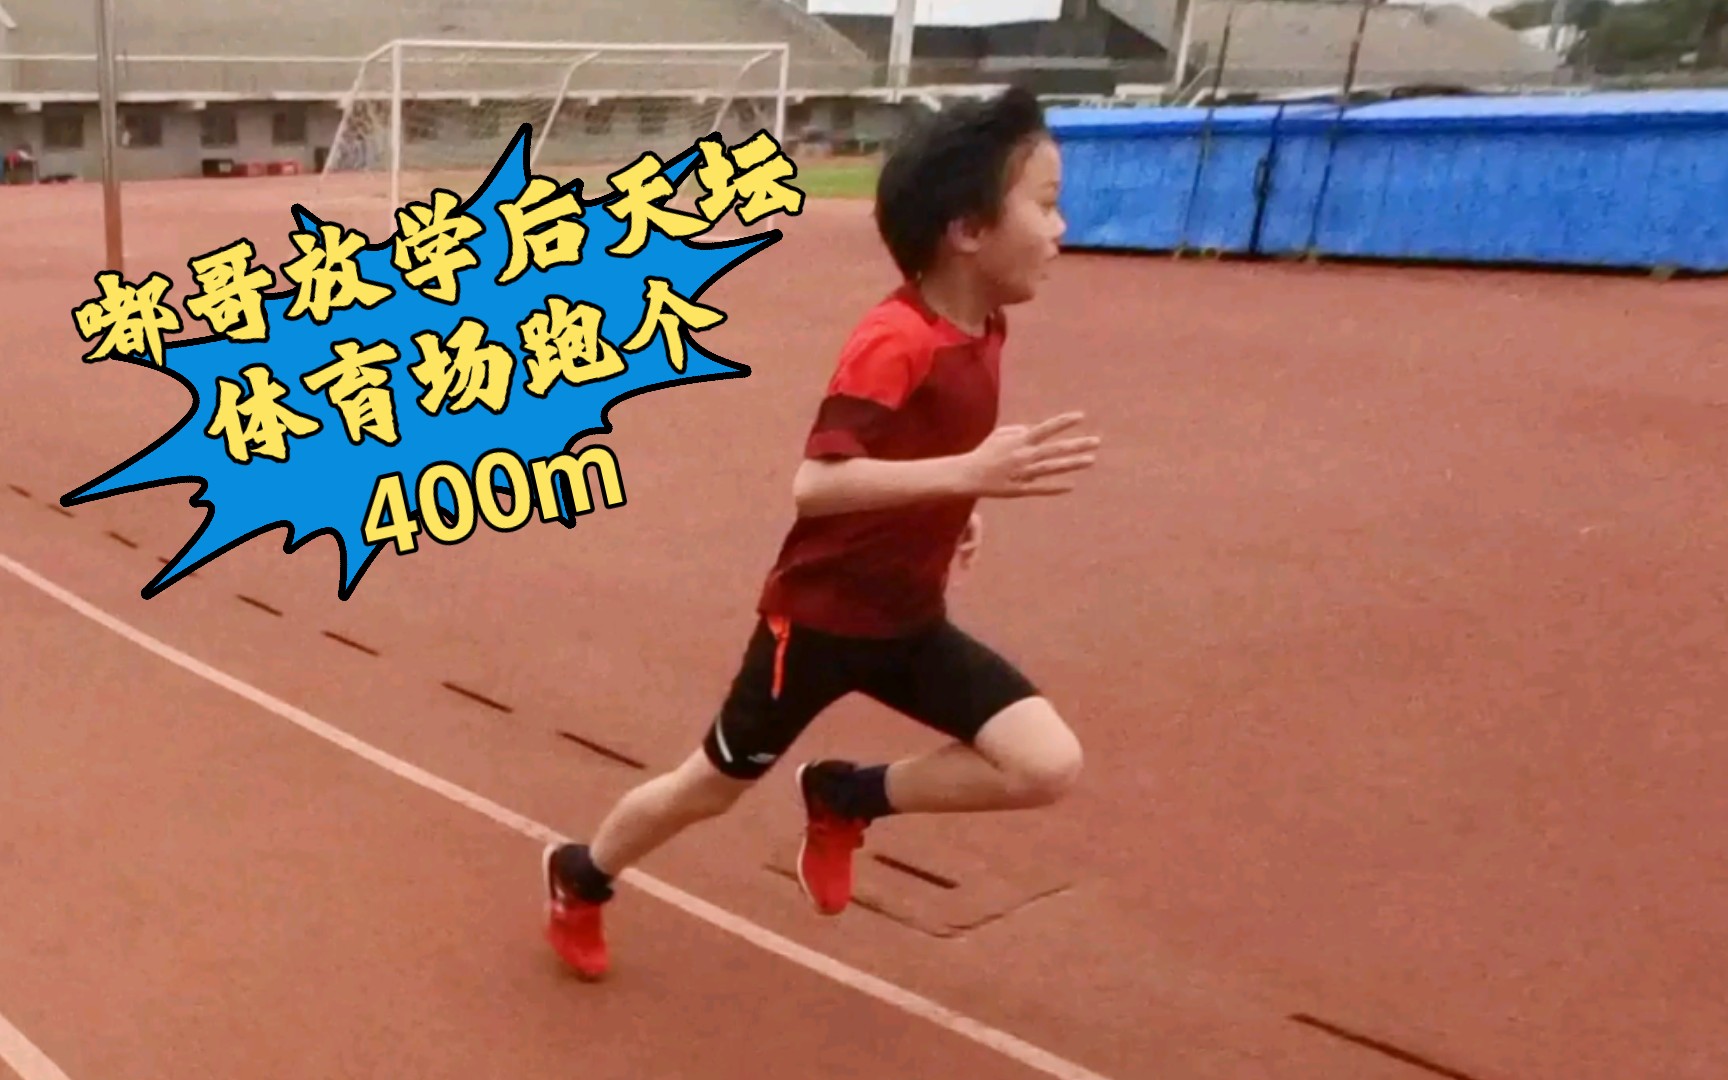 嘟哥放学后跑个400m